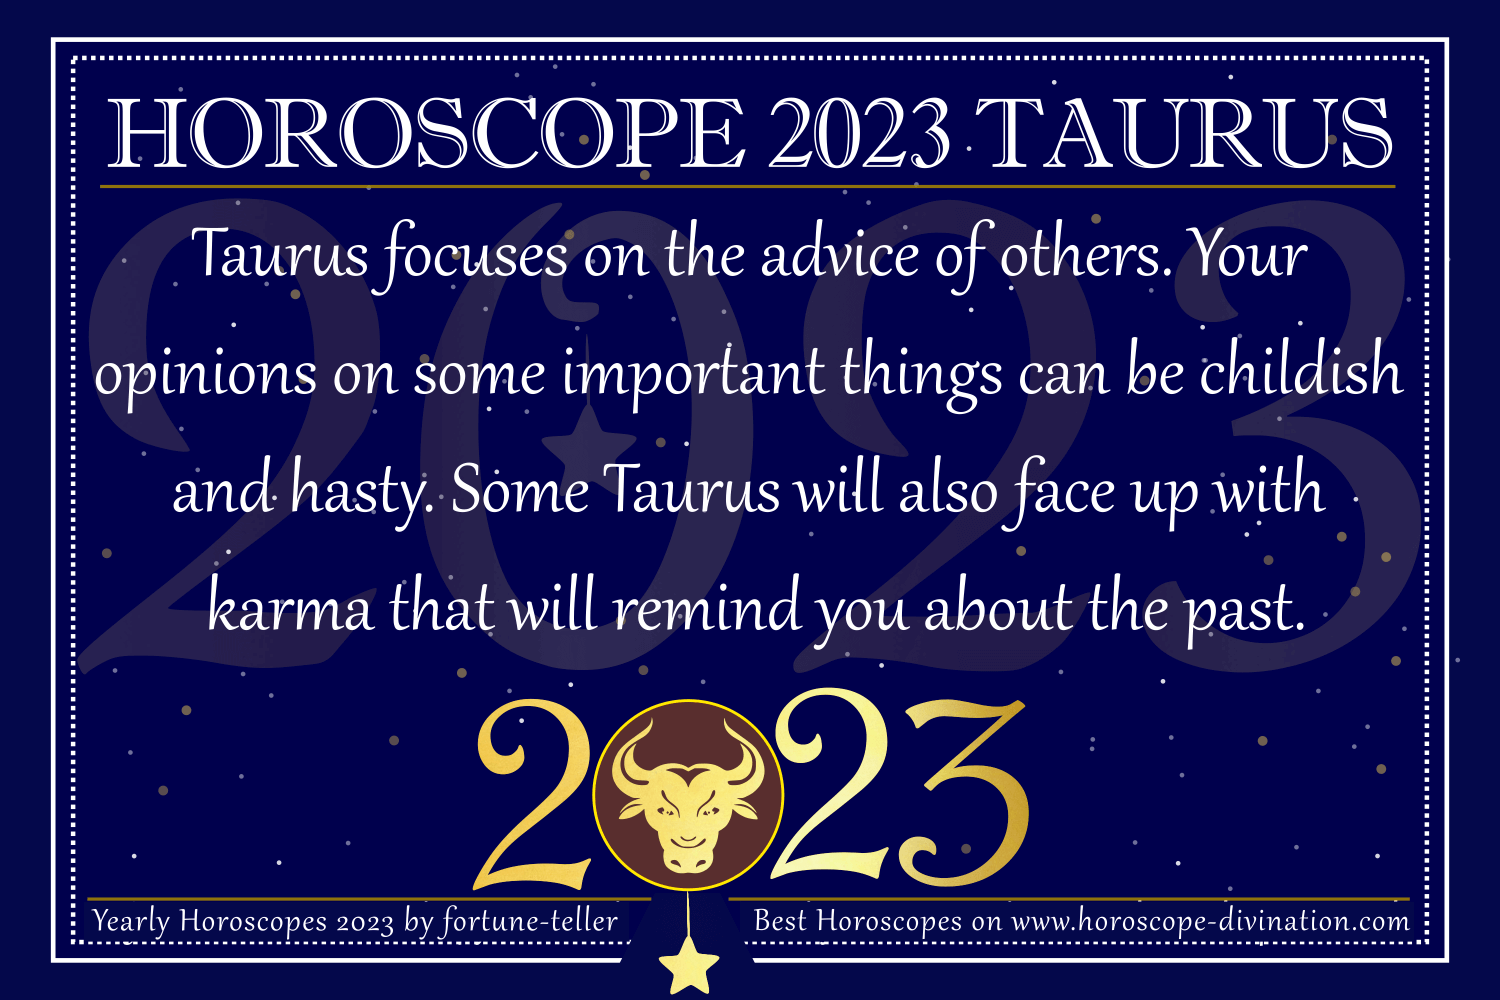 Horoscope2023 Taurus 